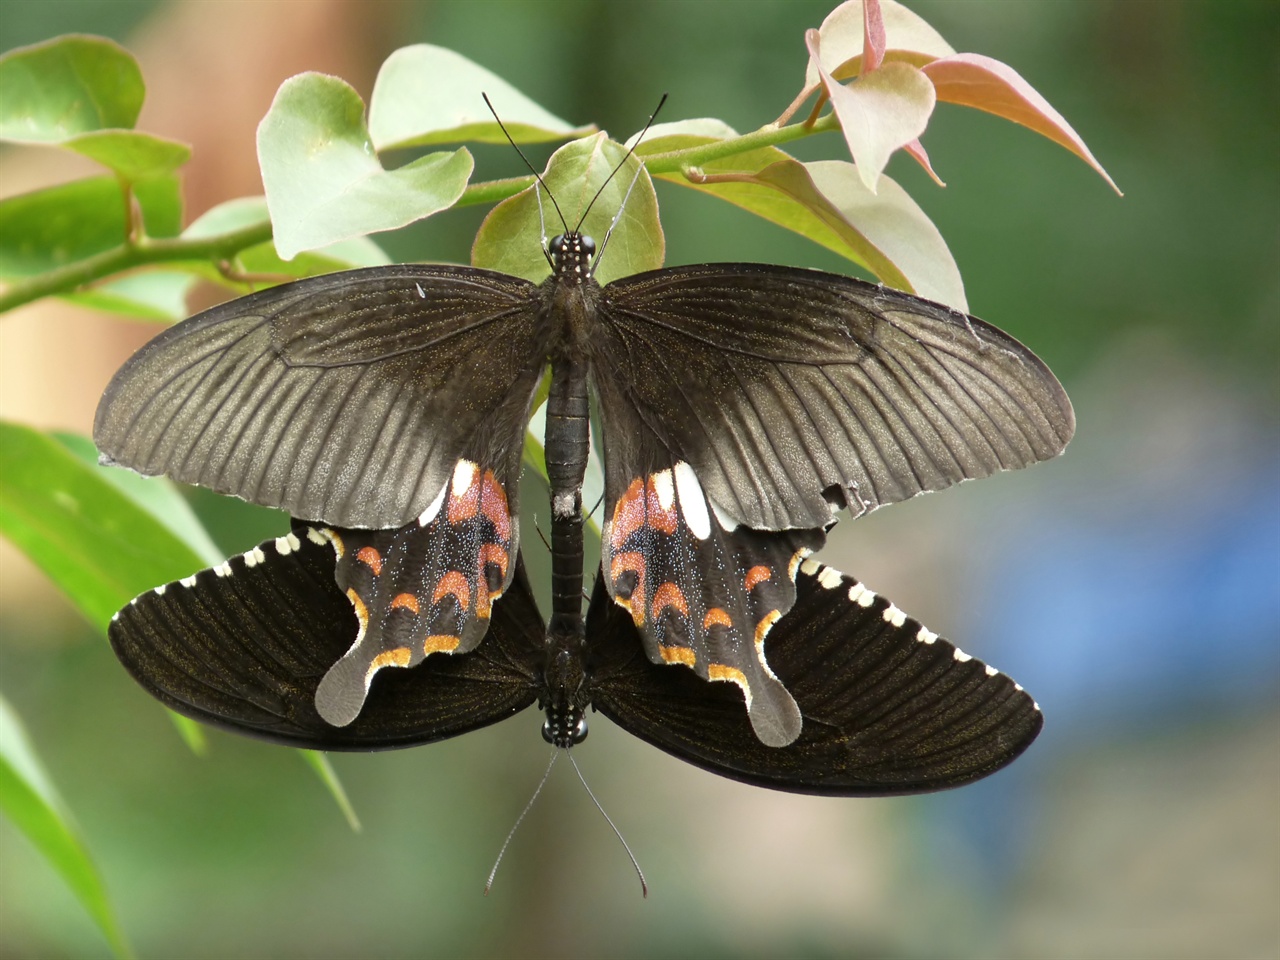 짝짓기 중인 모르몬 나비. 위쪽이 암컷이다. 호랑나비의 일종인 모르몬 나비 수컷은 암컷의 색깔에 끌리는 게 아니라 왕성한 활동력에 매력을 느끼는 것으로 드러났다.